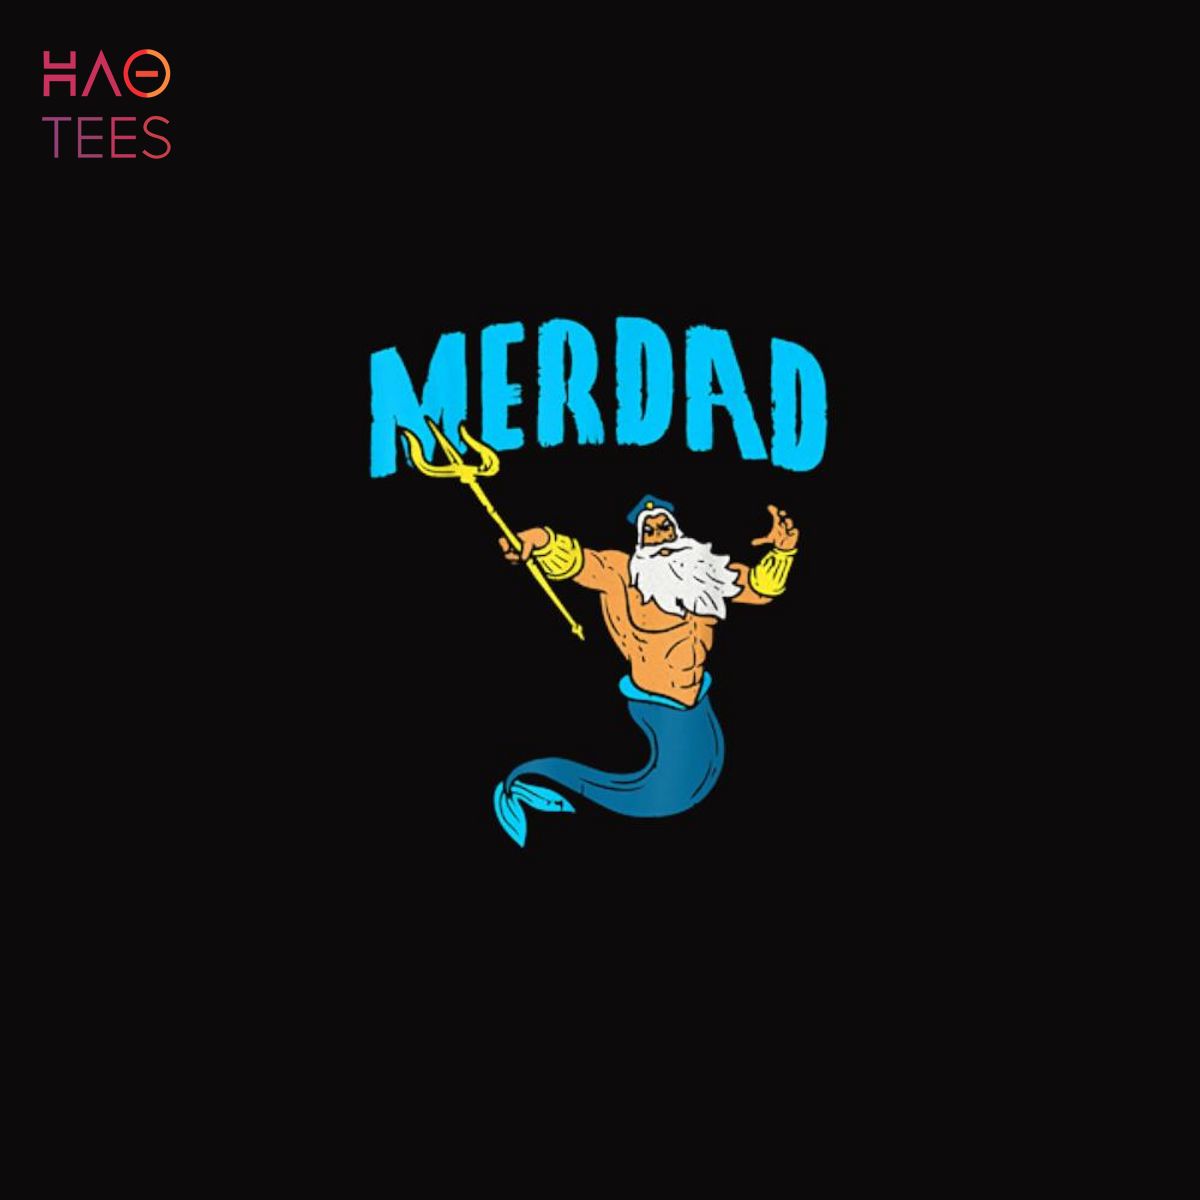 Merdad Security Merman Mermaid Daddy Fish Father's Day Dad Shirt